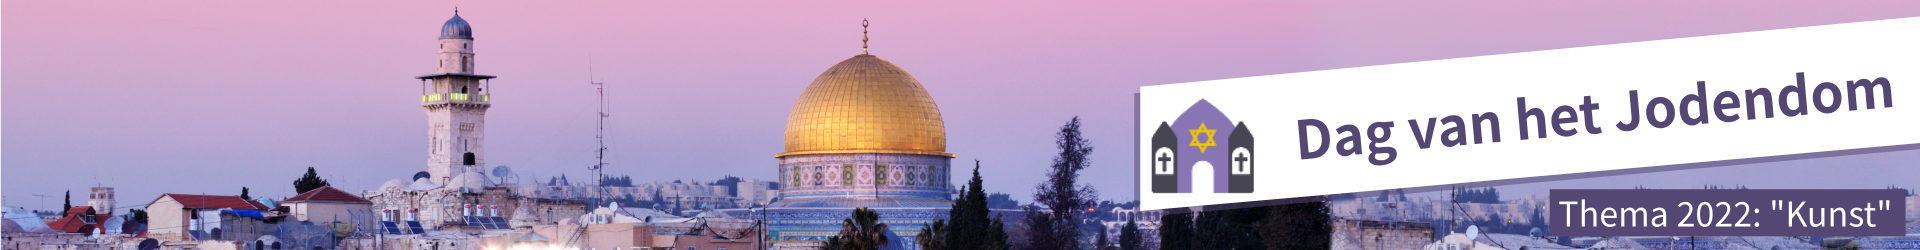 Categorie: Dag van het Jodendom 2022